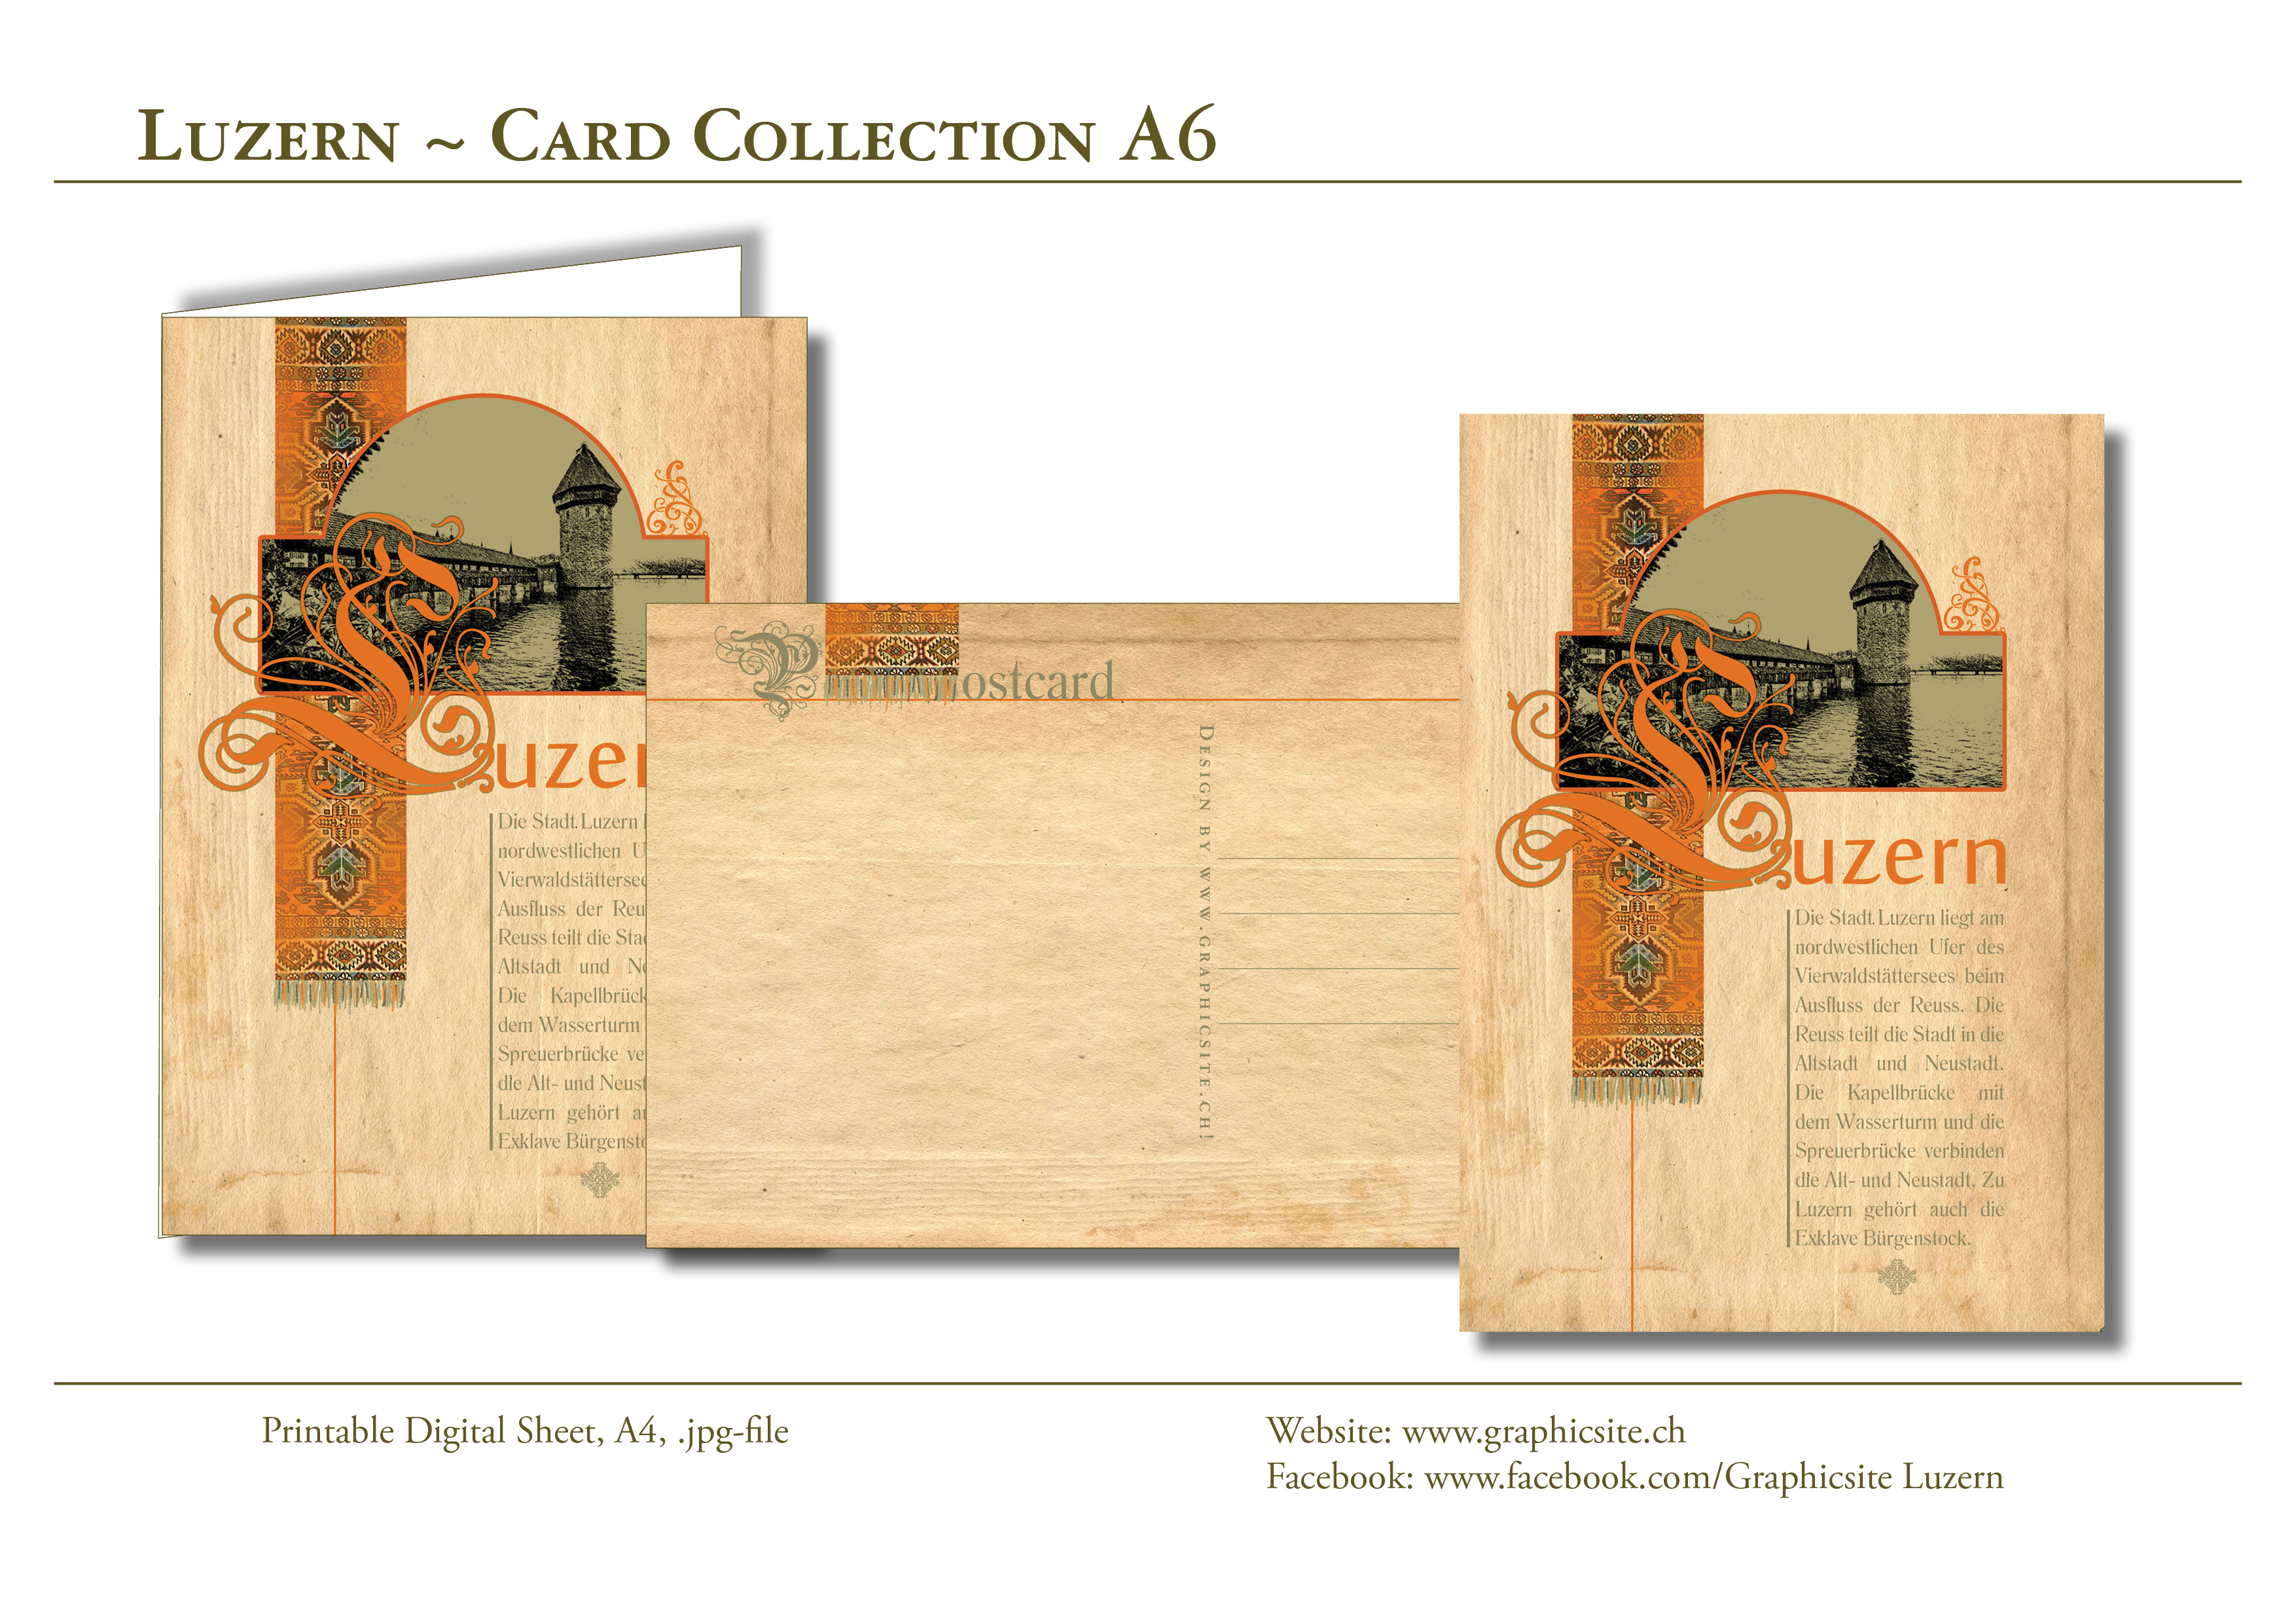 Grafiker Luzern - Karten selber drucken - Postkarten 9x4 Zoll - Luzern, #antik, Wasserturm, Luzern, #Postkarten, #Karten, #basteln, #Grusskarten,